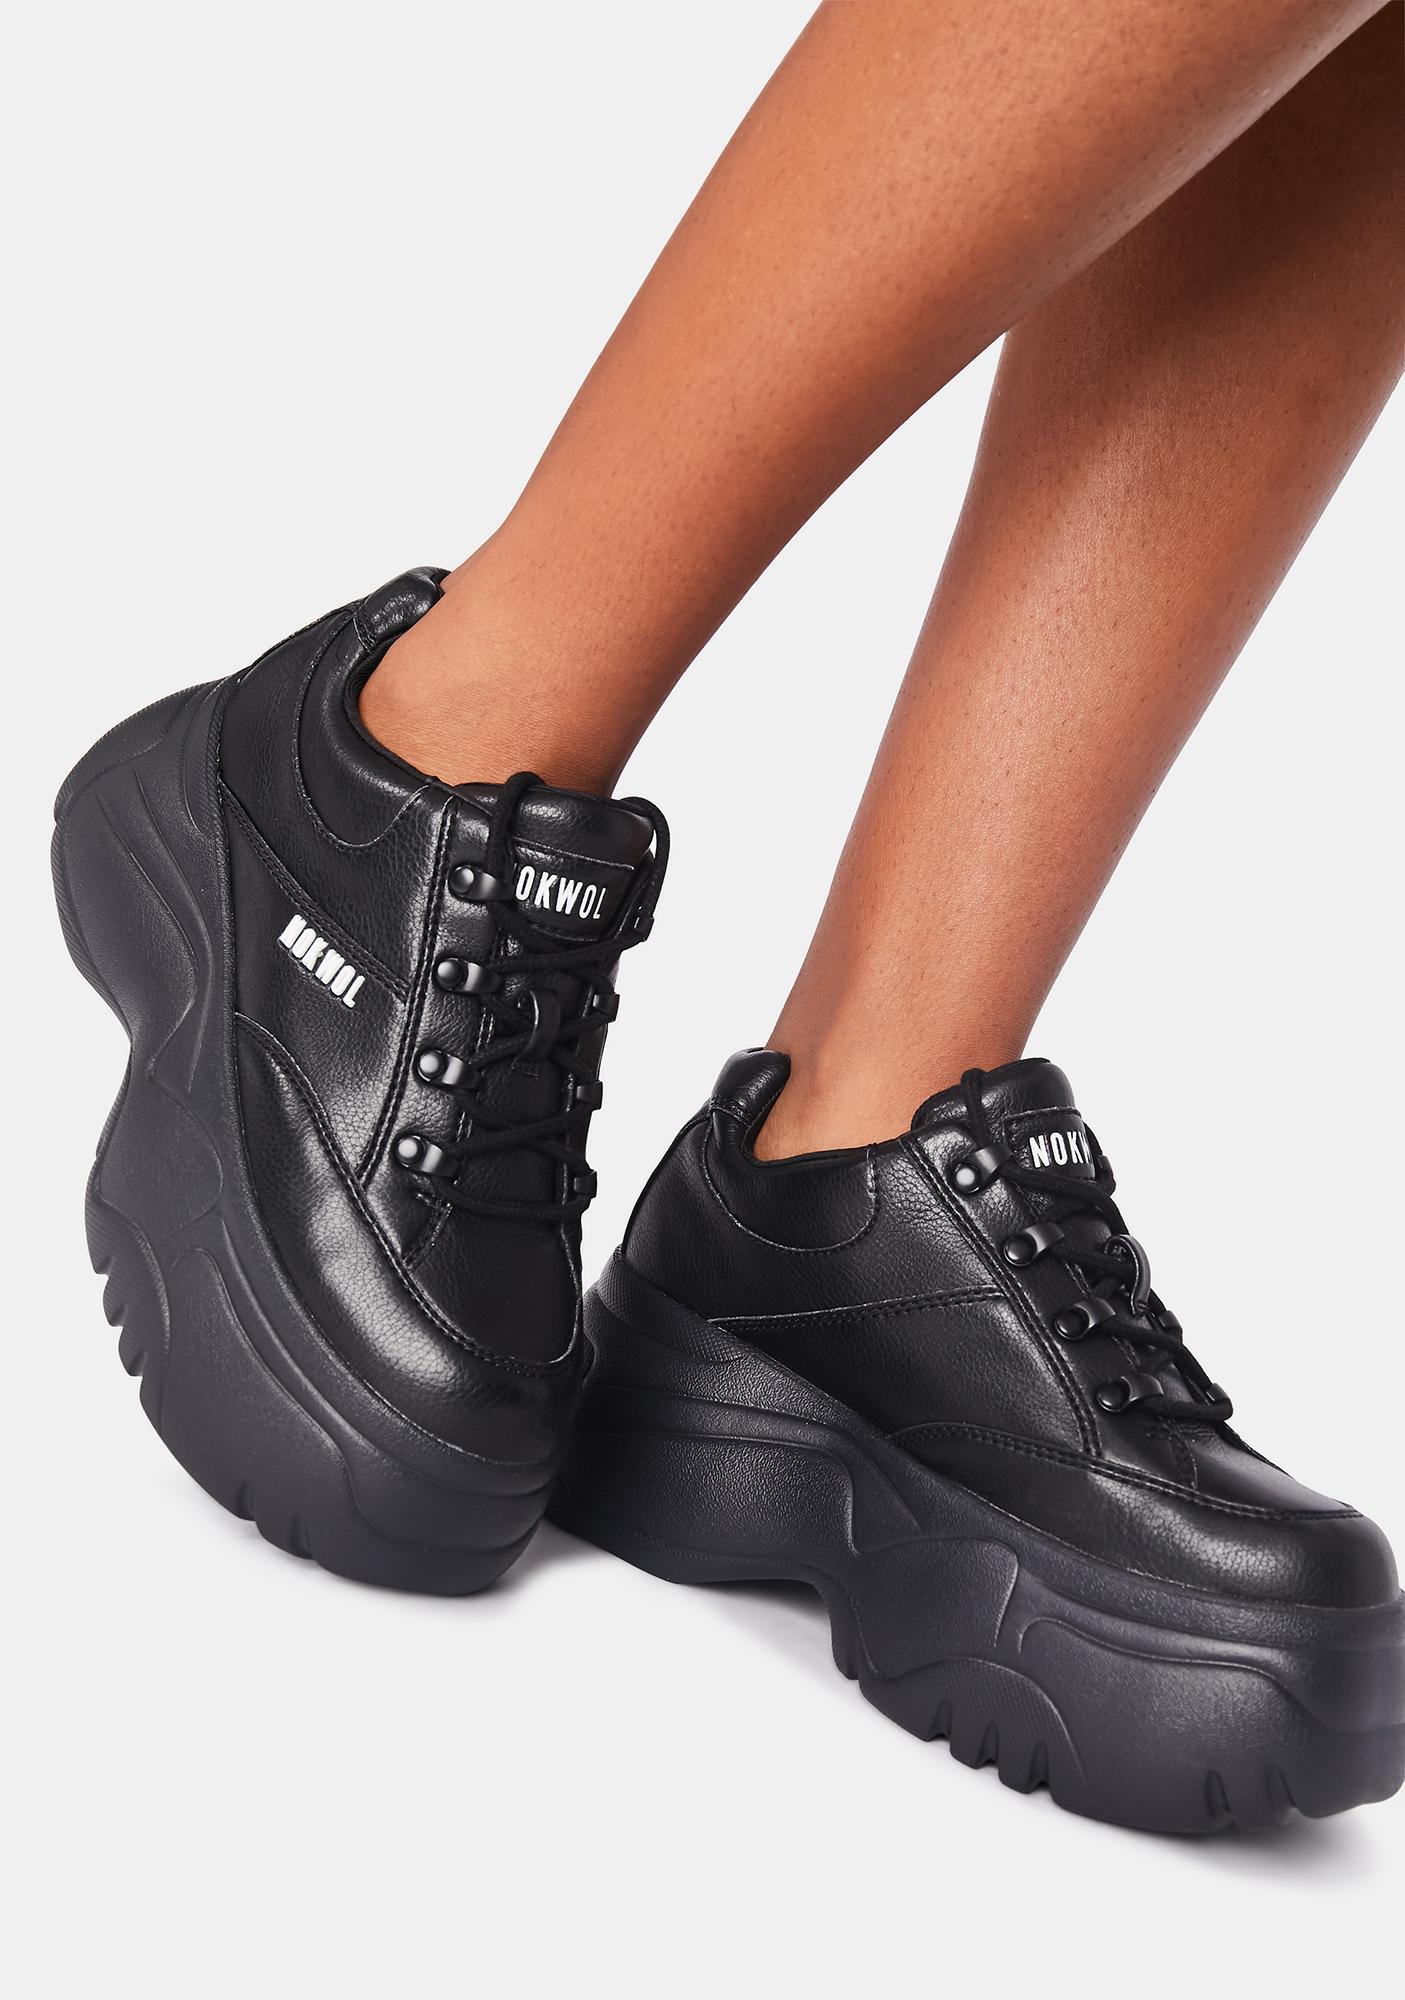 all black platform sneakers